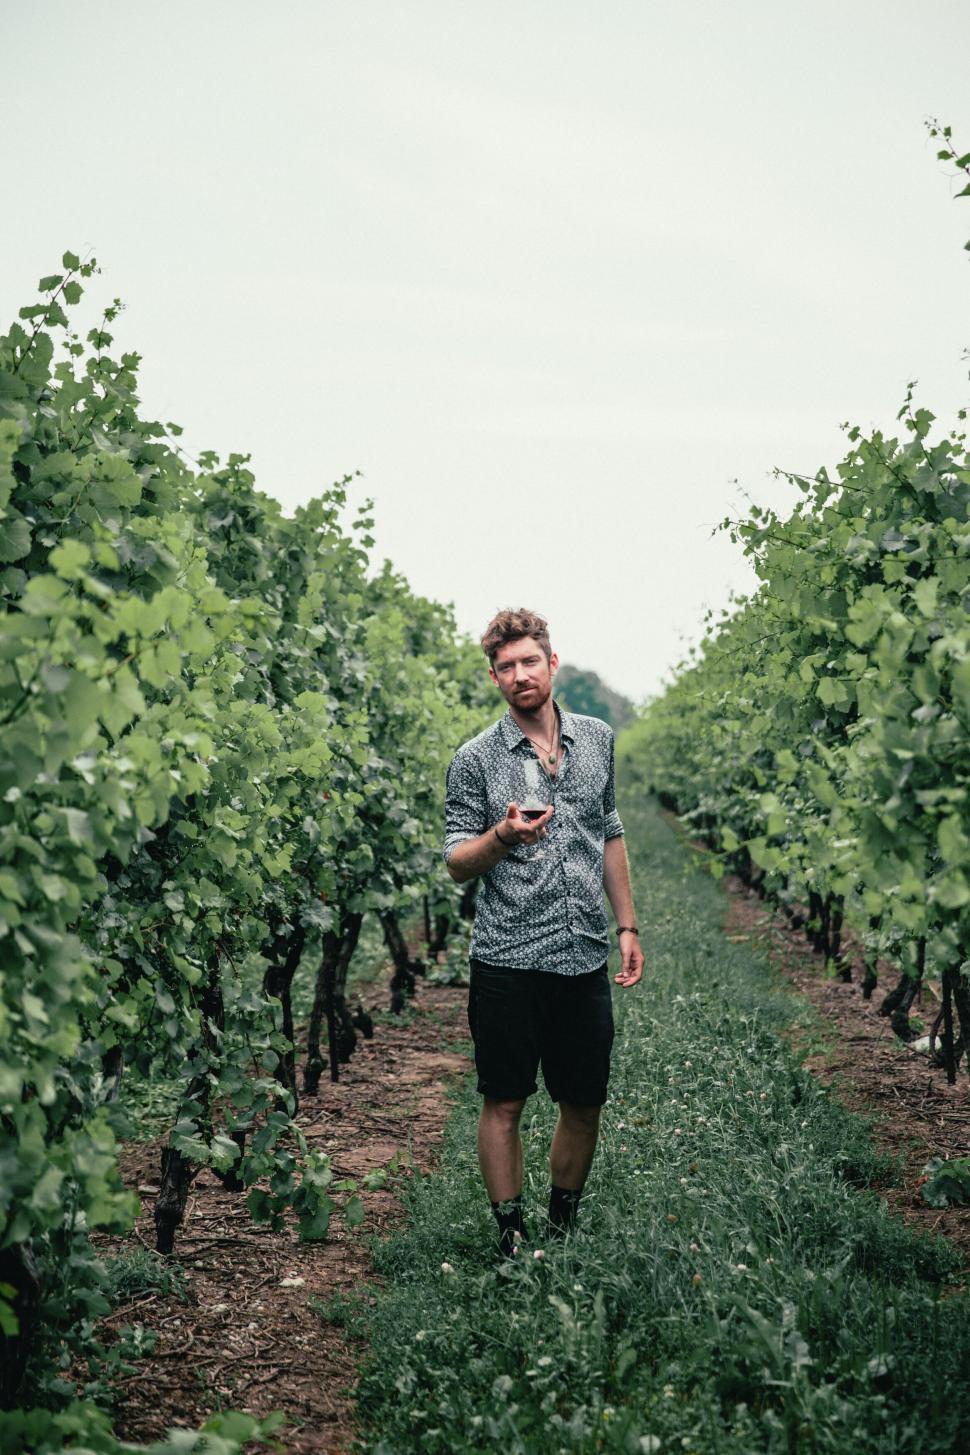 Free Image of Man walking through vineyard texting 